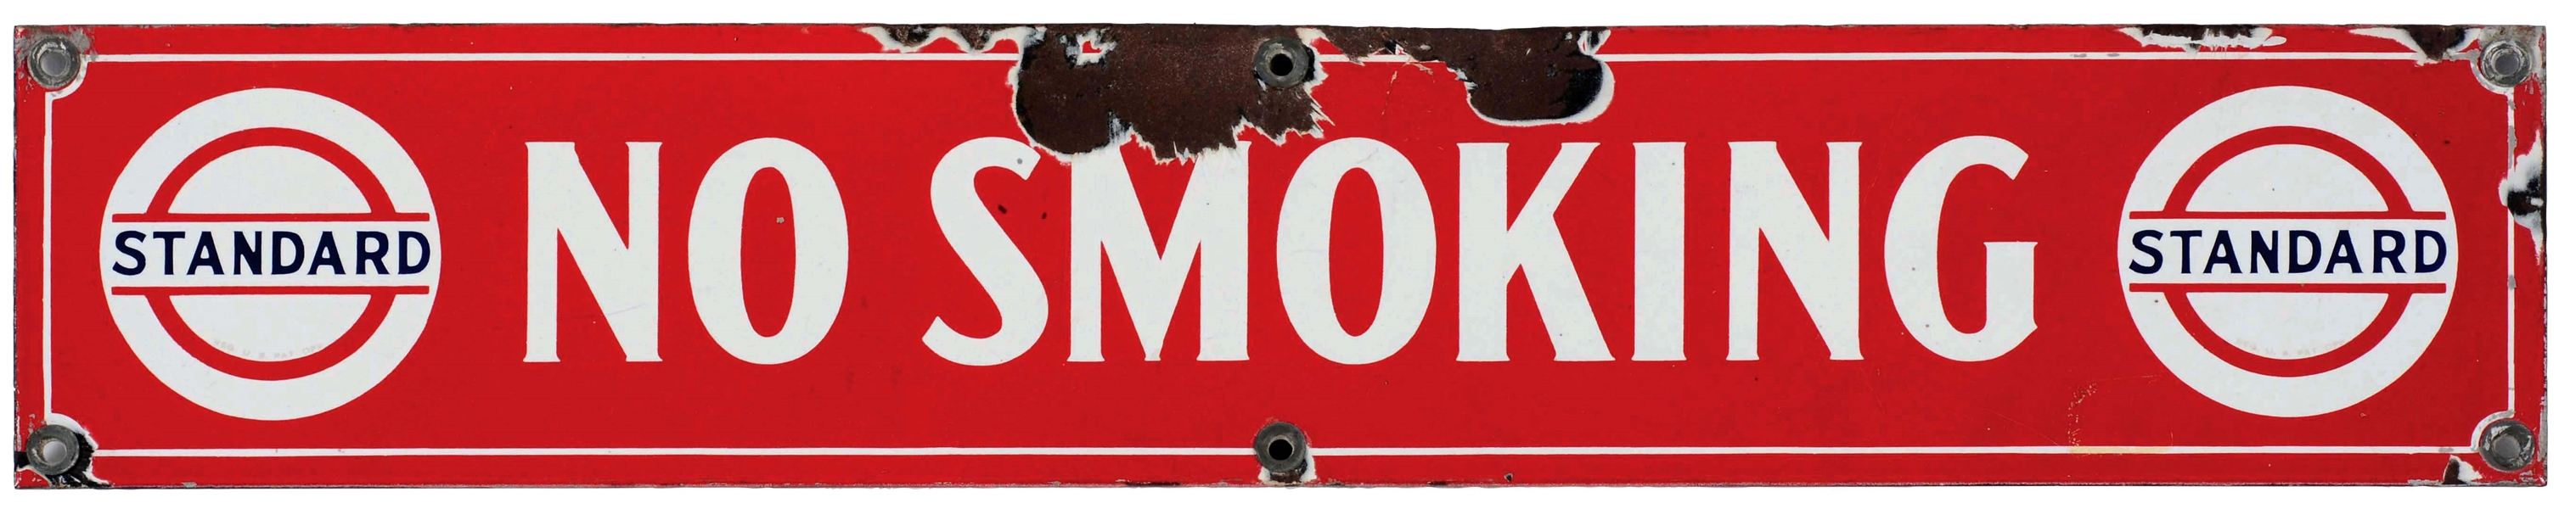 STANDARD GASOLINE & MOTOR OIL NO SMOKING PORCELAIN SIGN.